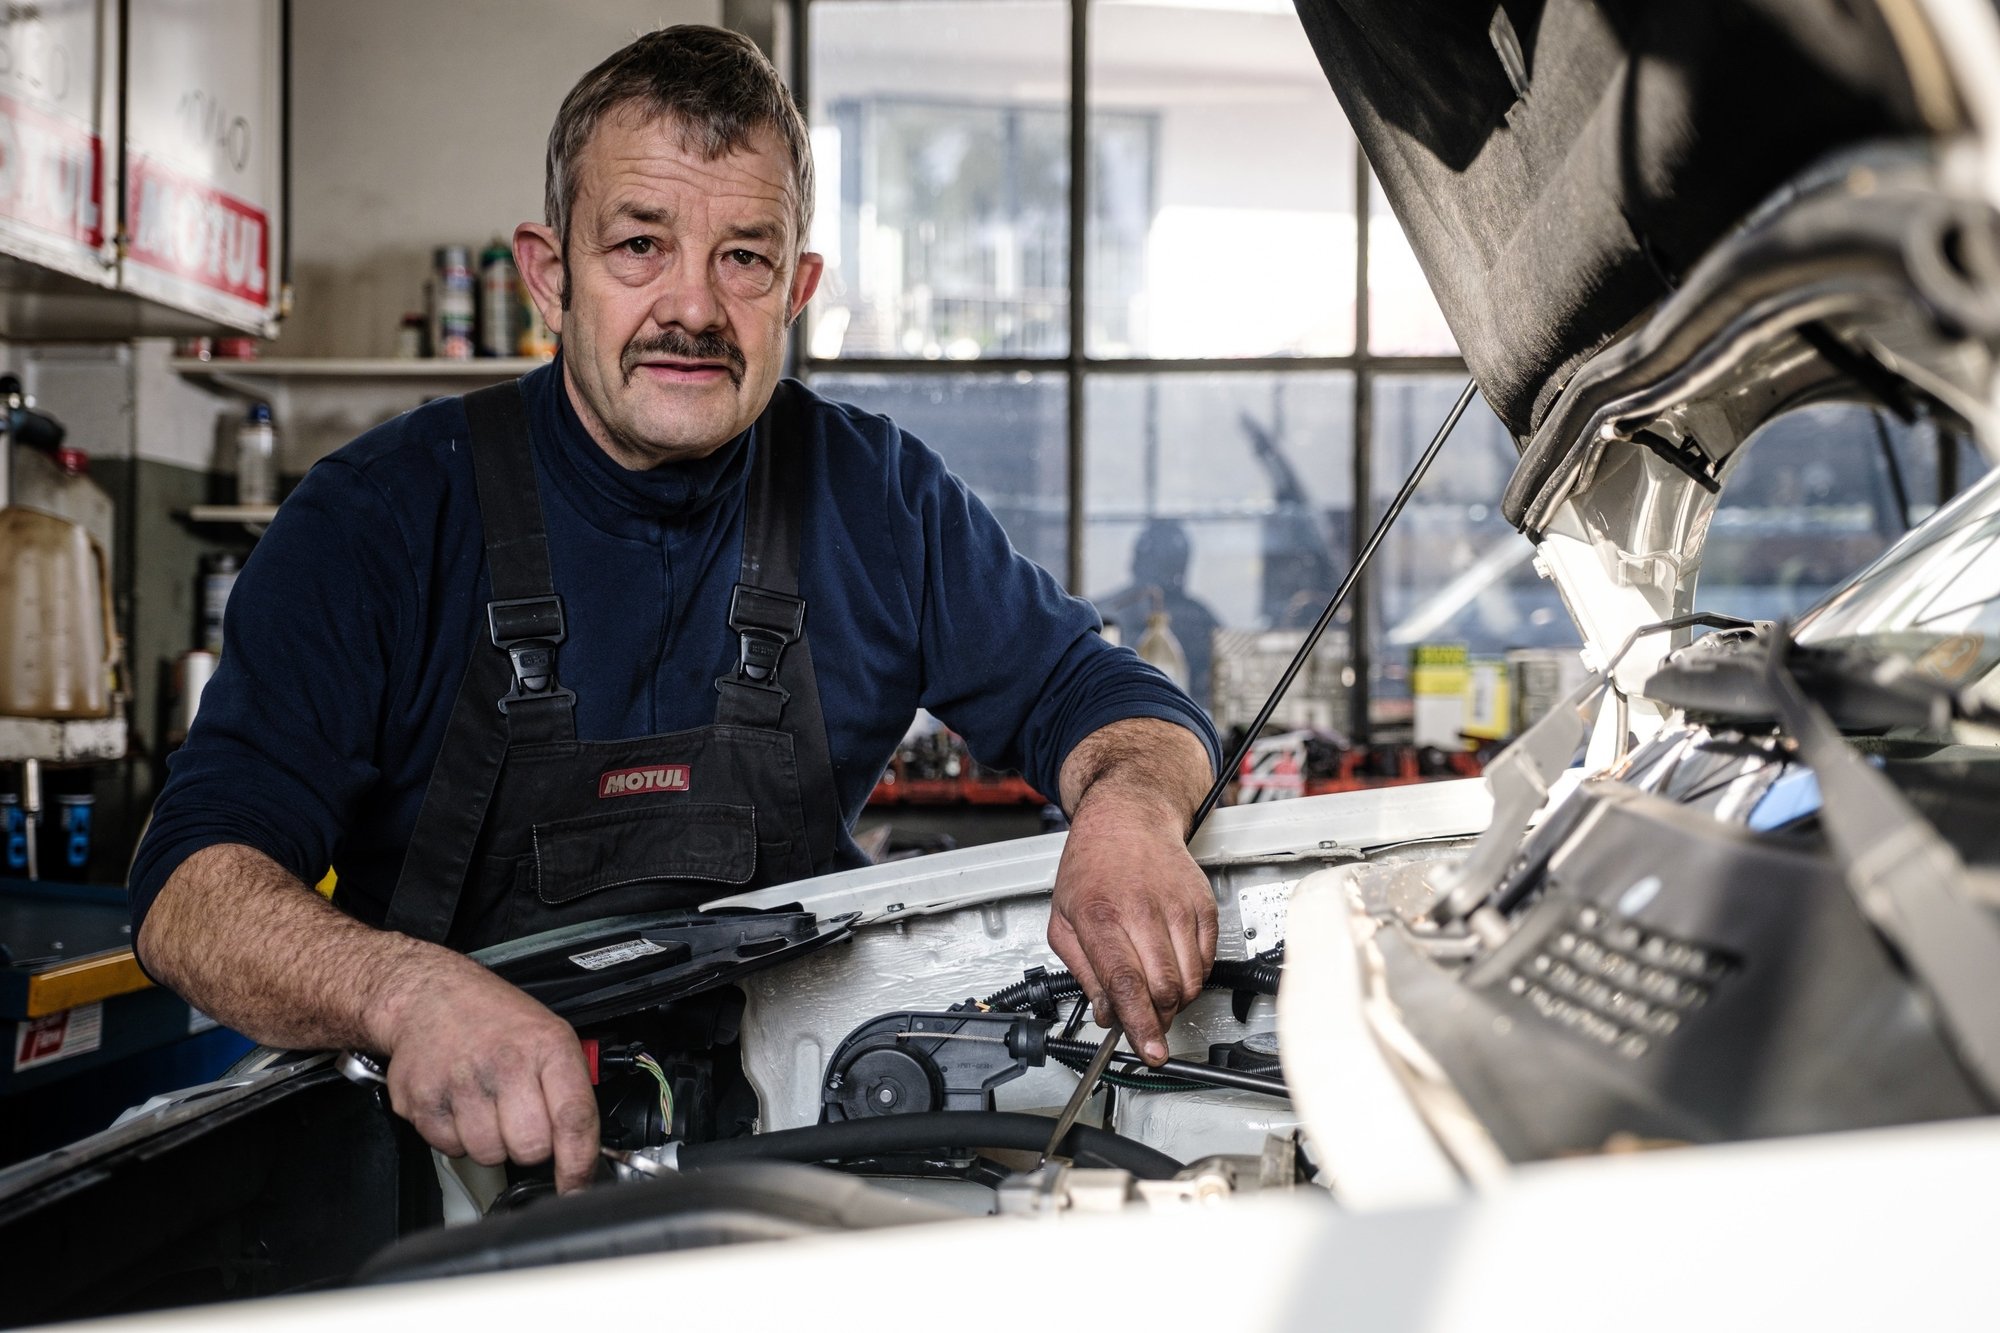 L'artisan de la mécanique, Yvan Gilliéron, alias "Gigi", doit abandonner son atelier à la route de Saint-Cergue, à Nyon. Il terminera sa carrière en tant qu'employé dans un autre garage nyonnais.